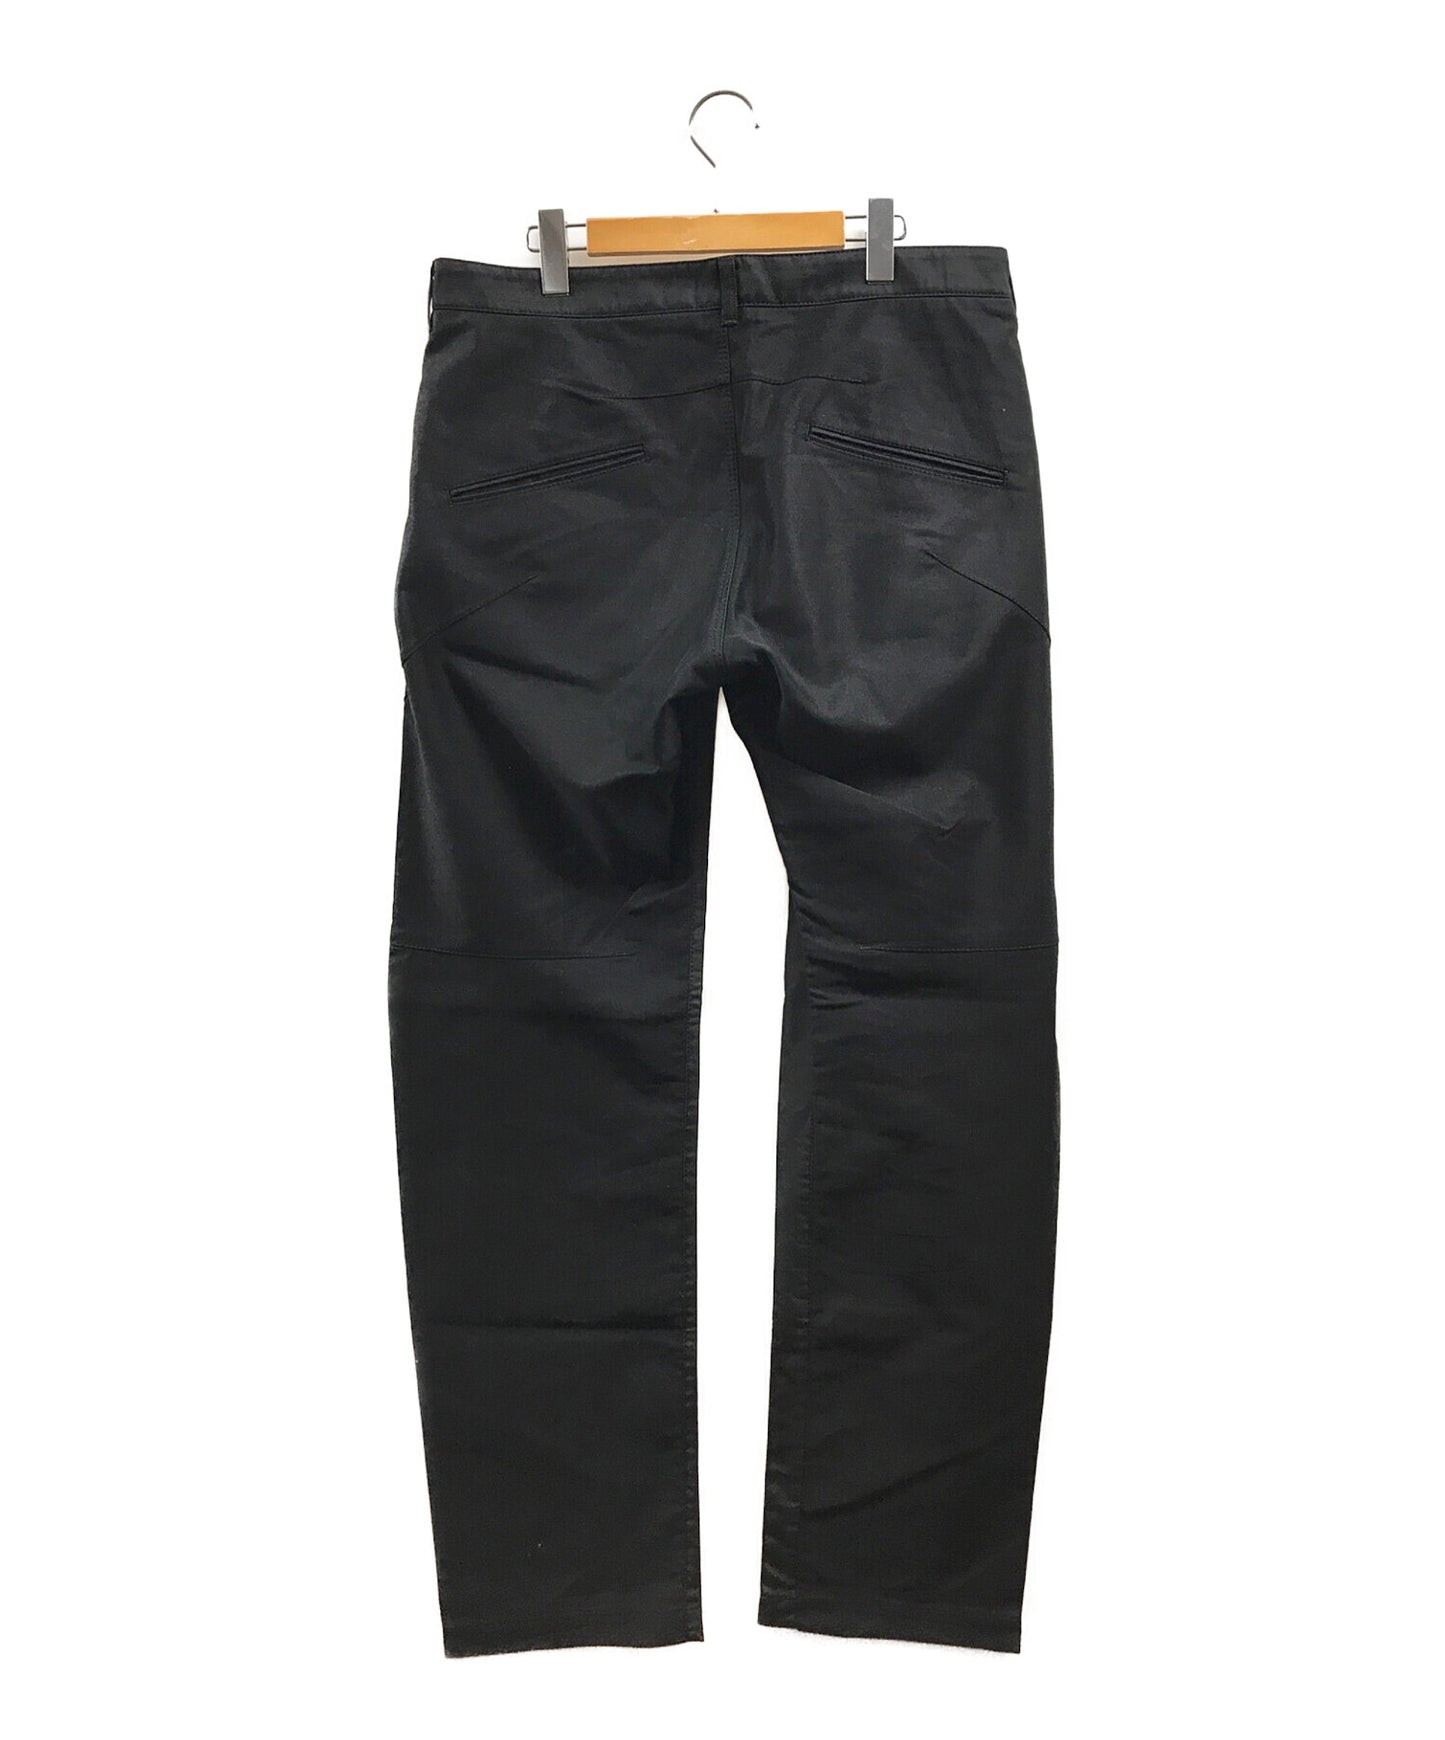 Issey Miyake裤子在两侧的颜色不同ME13FF068